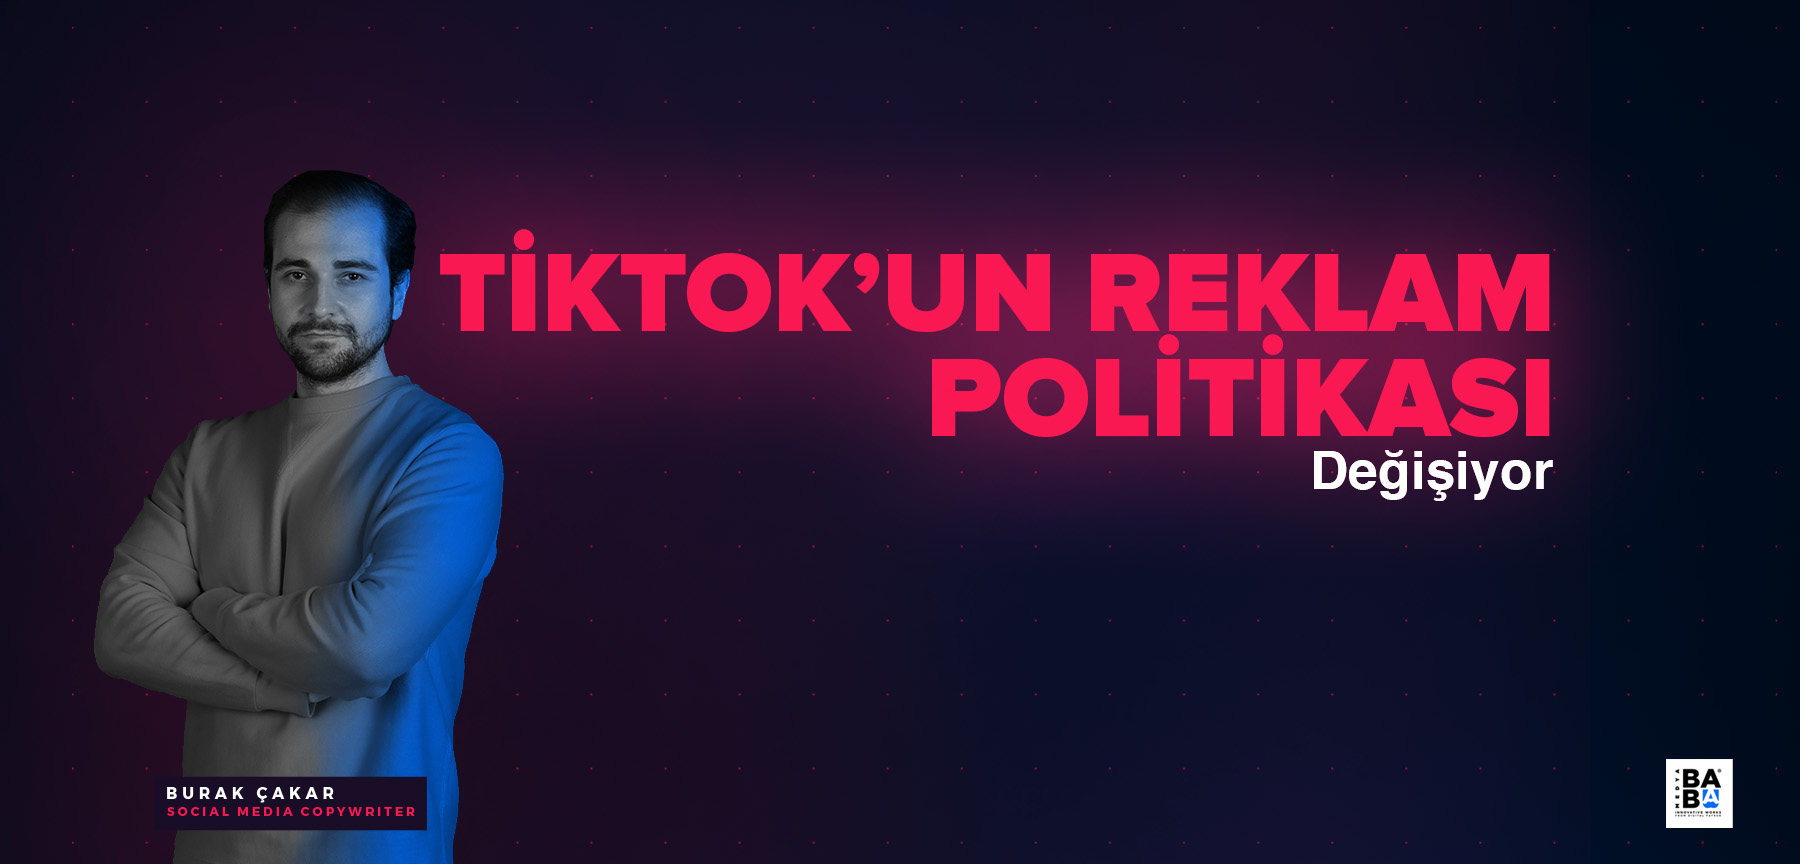 TİKTOK'UN REKLAM POLİTİKASI DEĞİŞİYOR